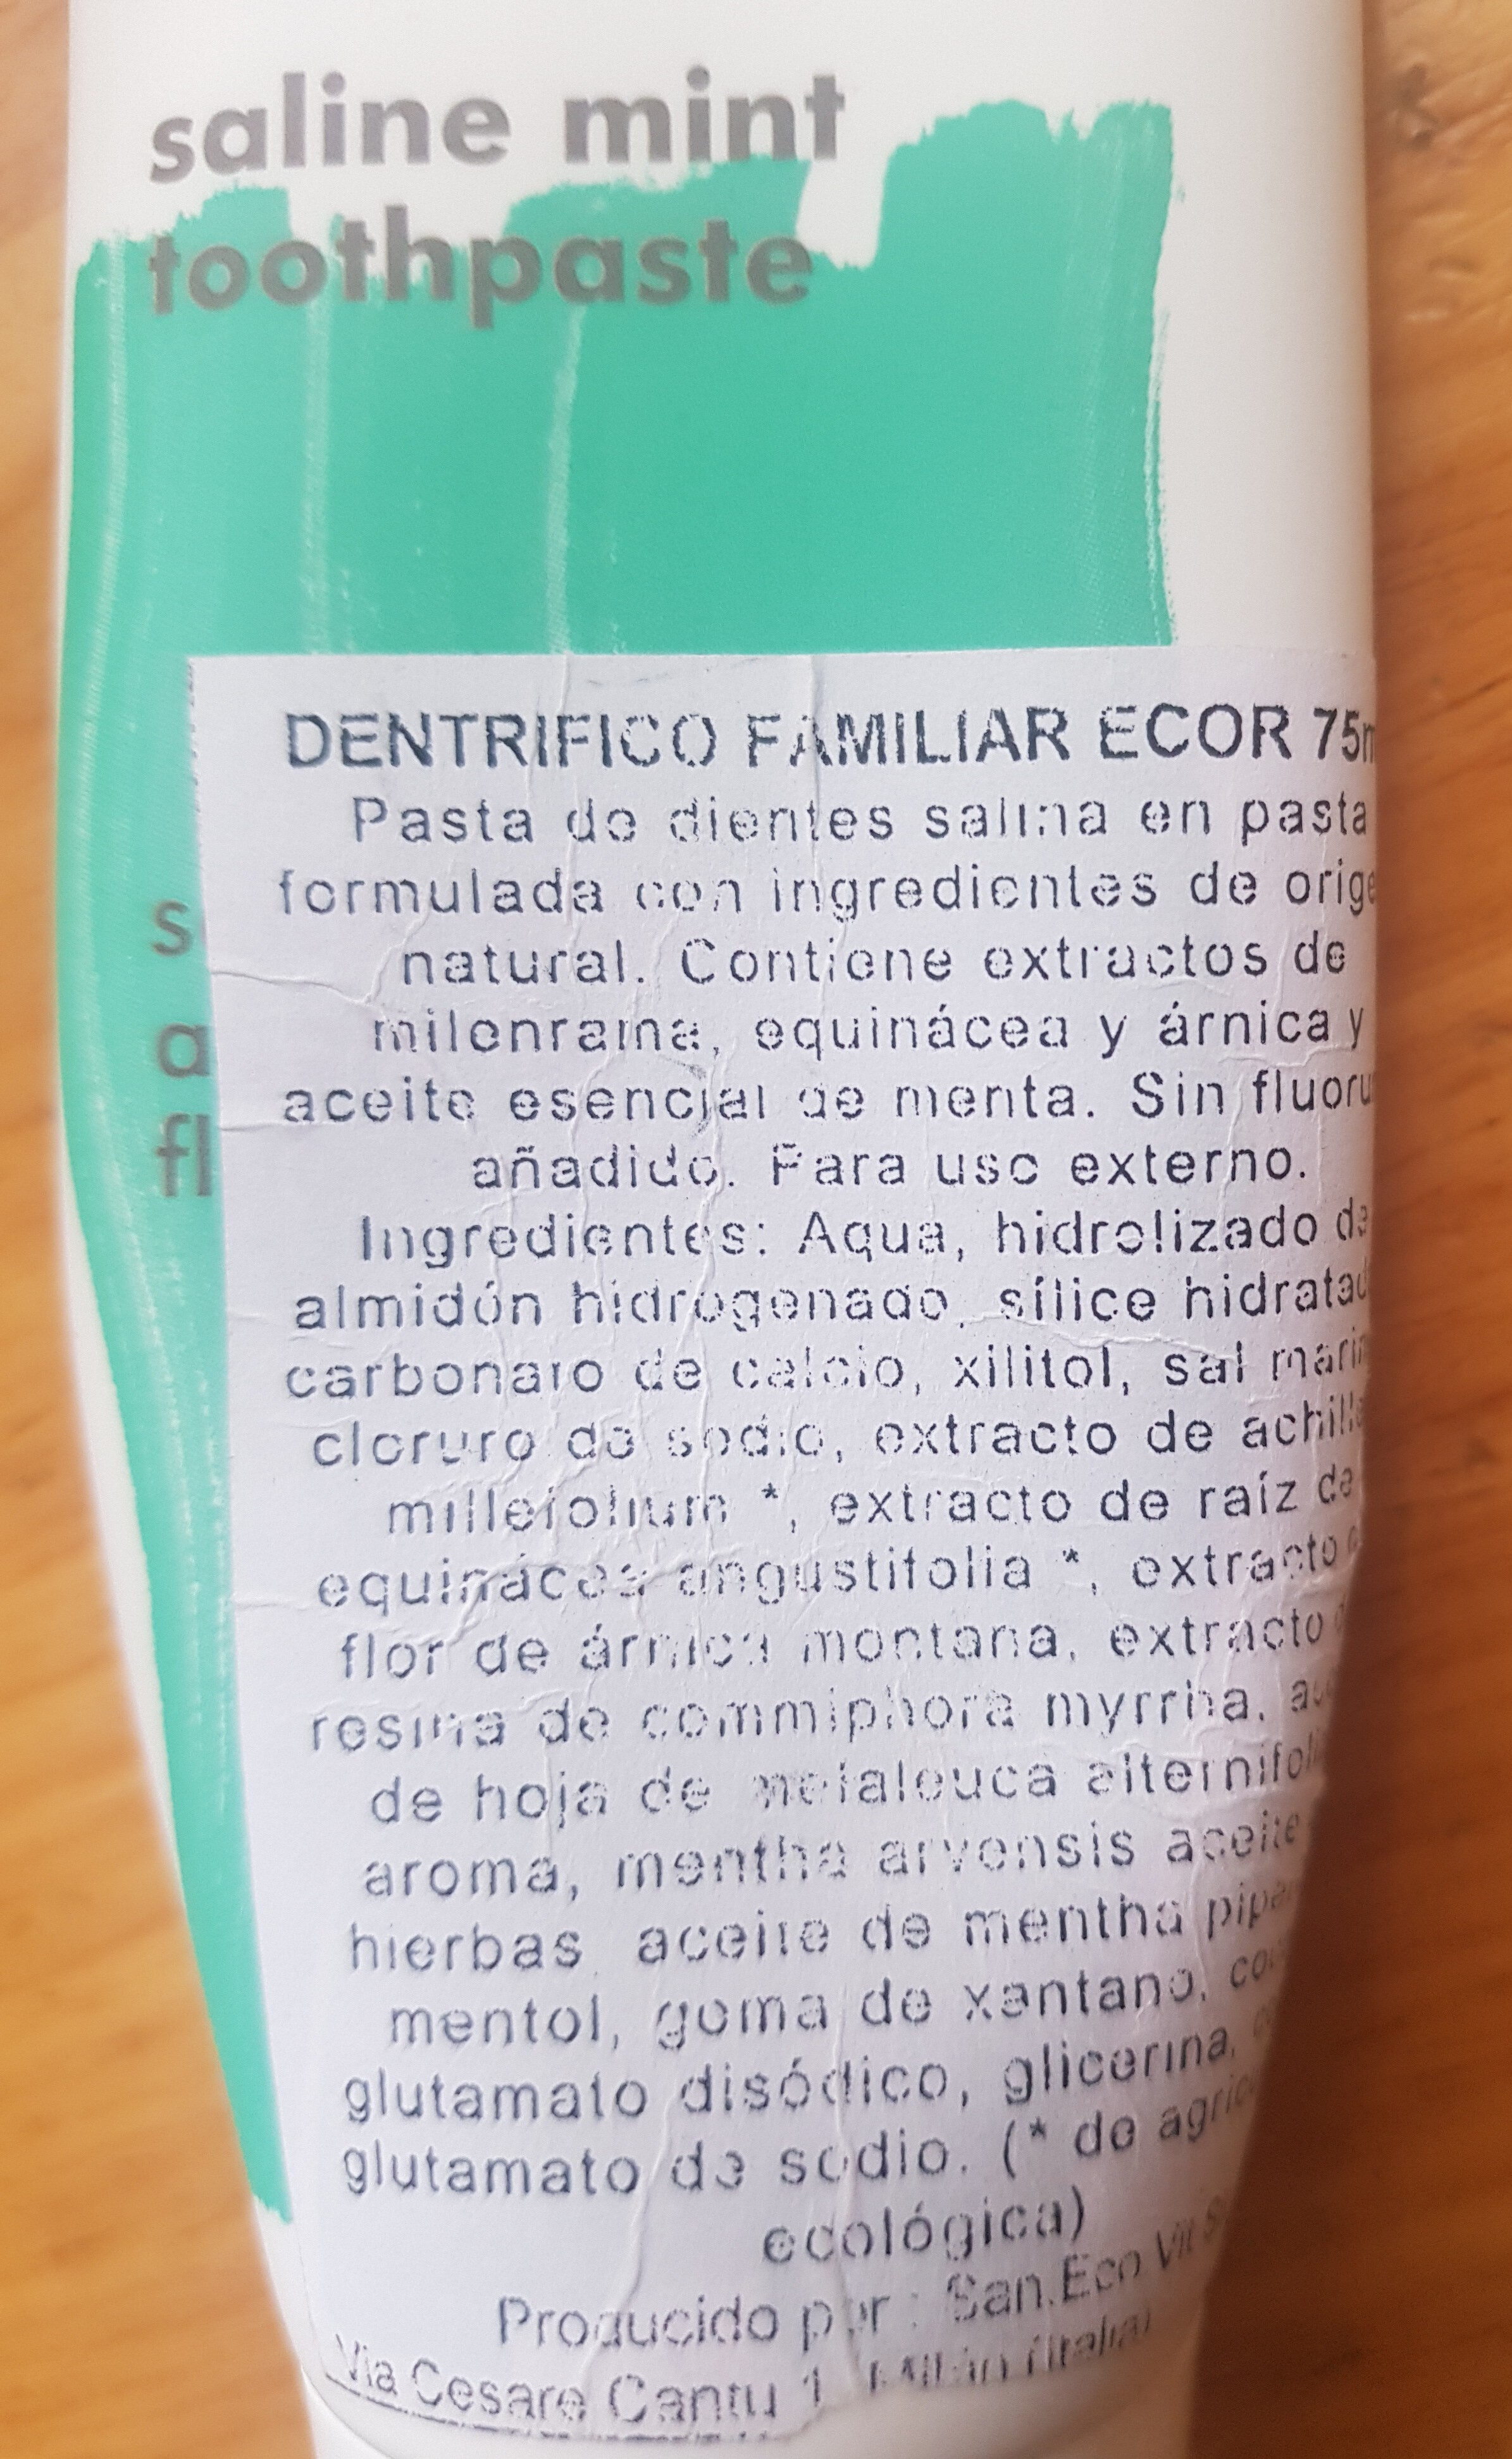 dentífrico salino menta - Ingredients - es